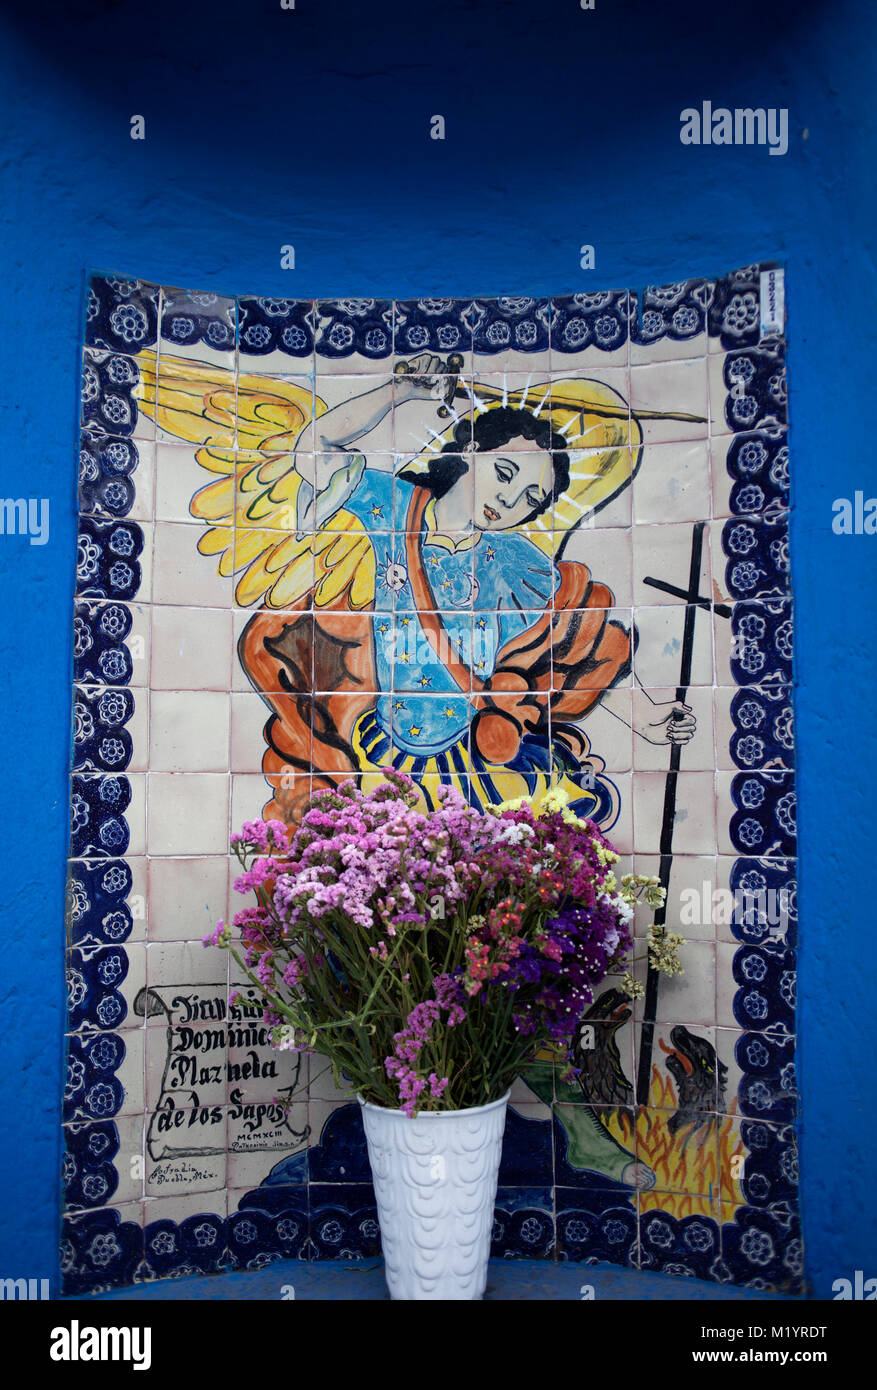 Ceramic tiles with the image of Saint Michael Arcángel decorate Plaza de los Sapos in Puebla de los Angeles, Mexico Stock Photo